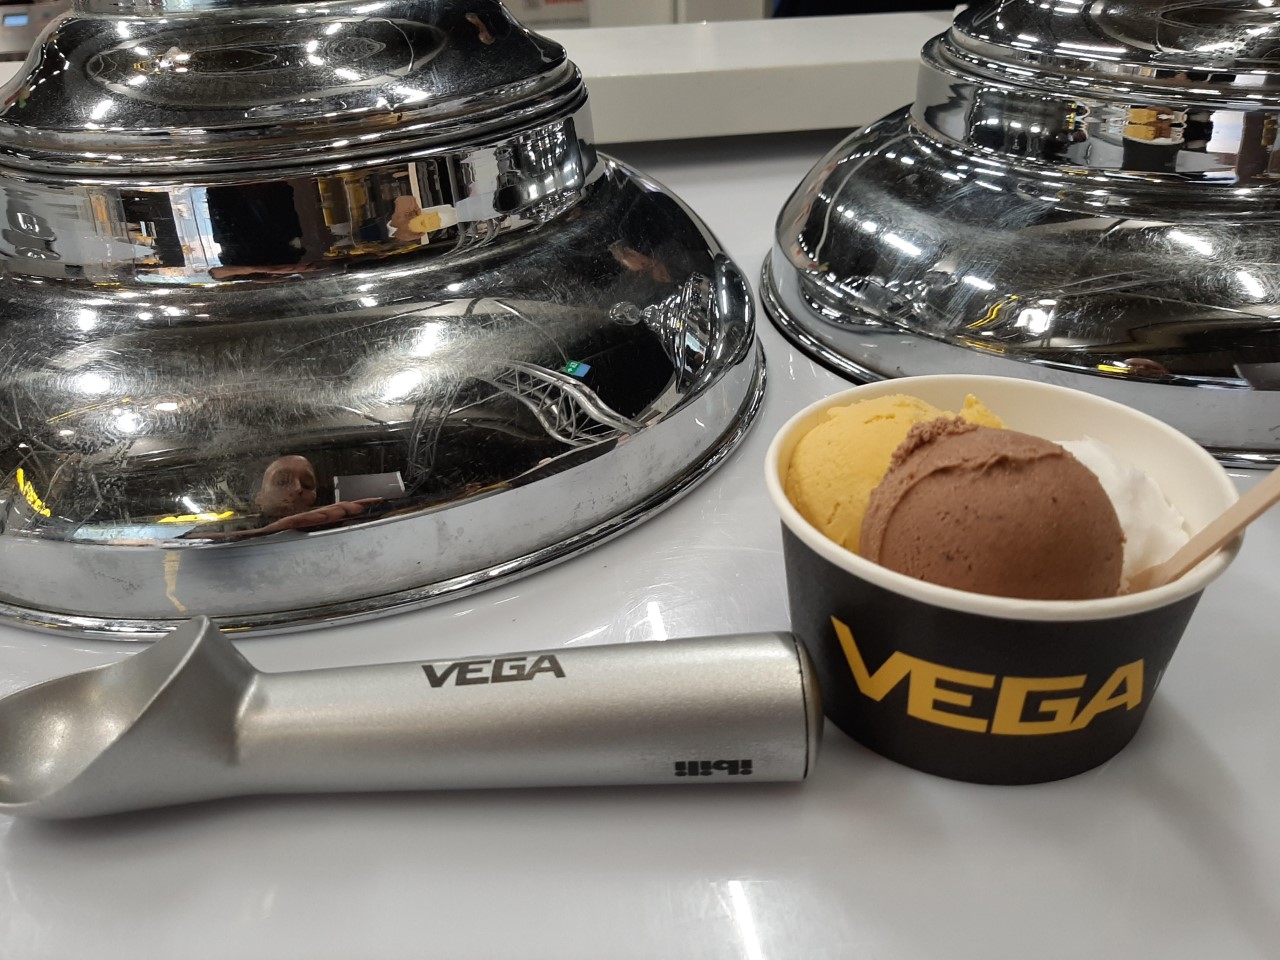 Vega ijs 